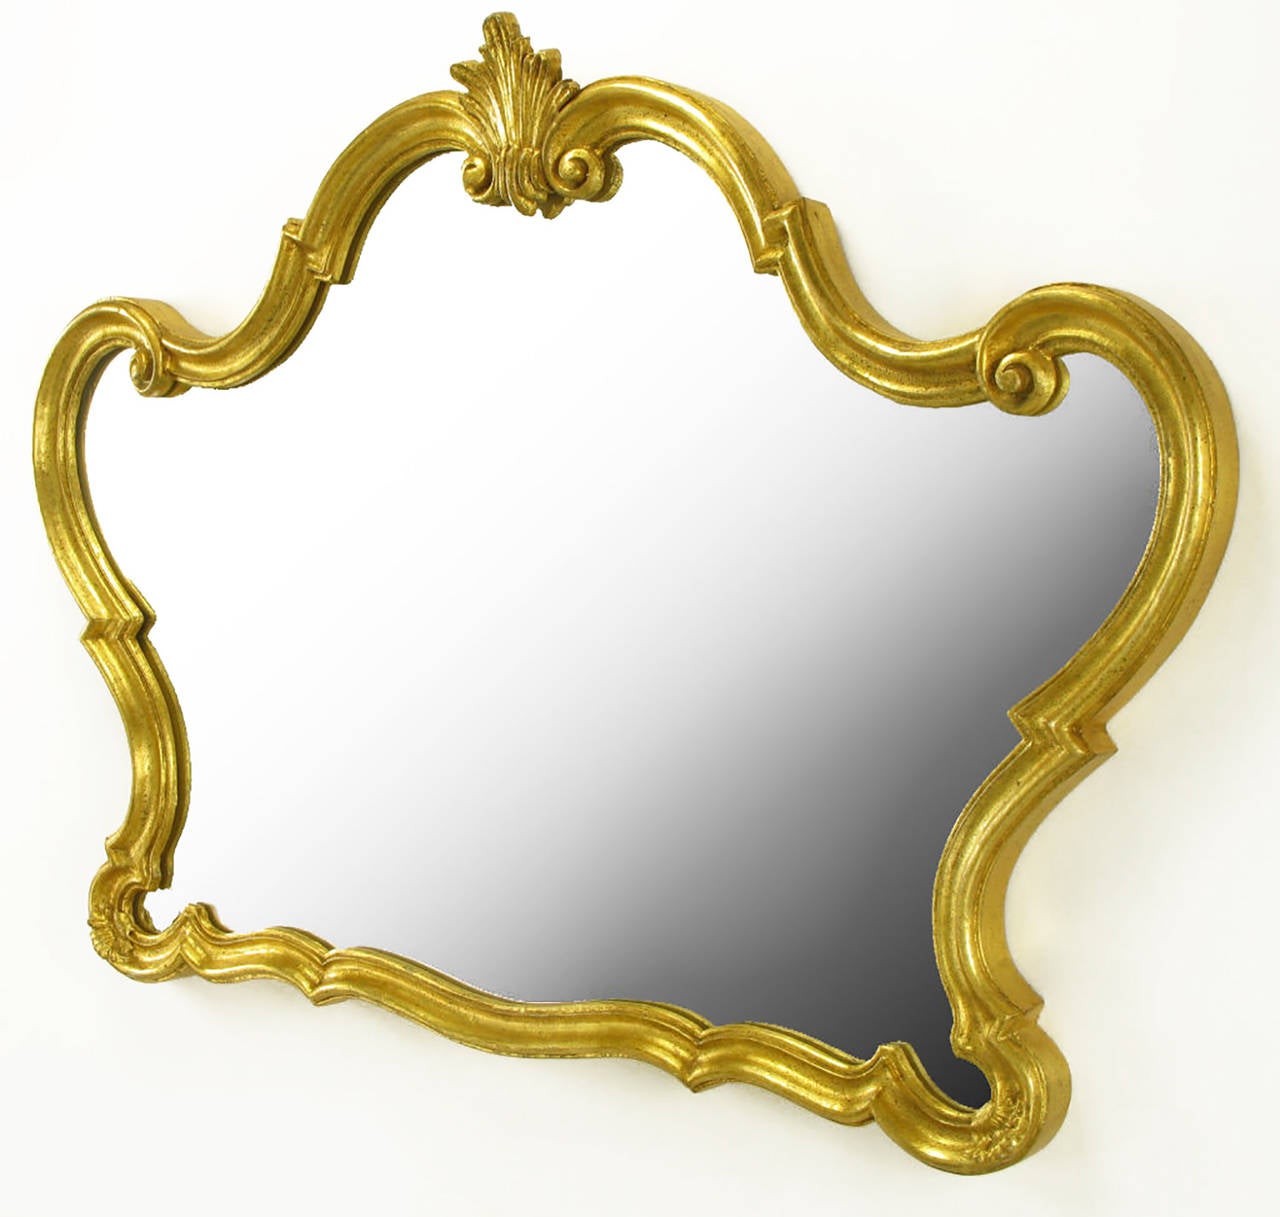 Miroir italien composé de bois, de bois composite et de gesso. Fini à la feuille d'or. Fait à la main par Florentia. Ce serait un miroir de courtoisie ou un miroir de trumeau remarquable.